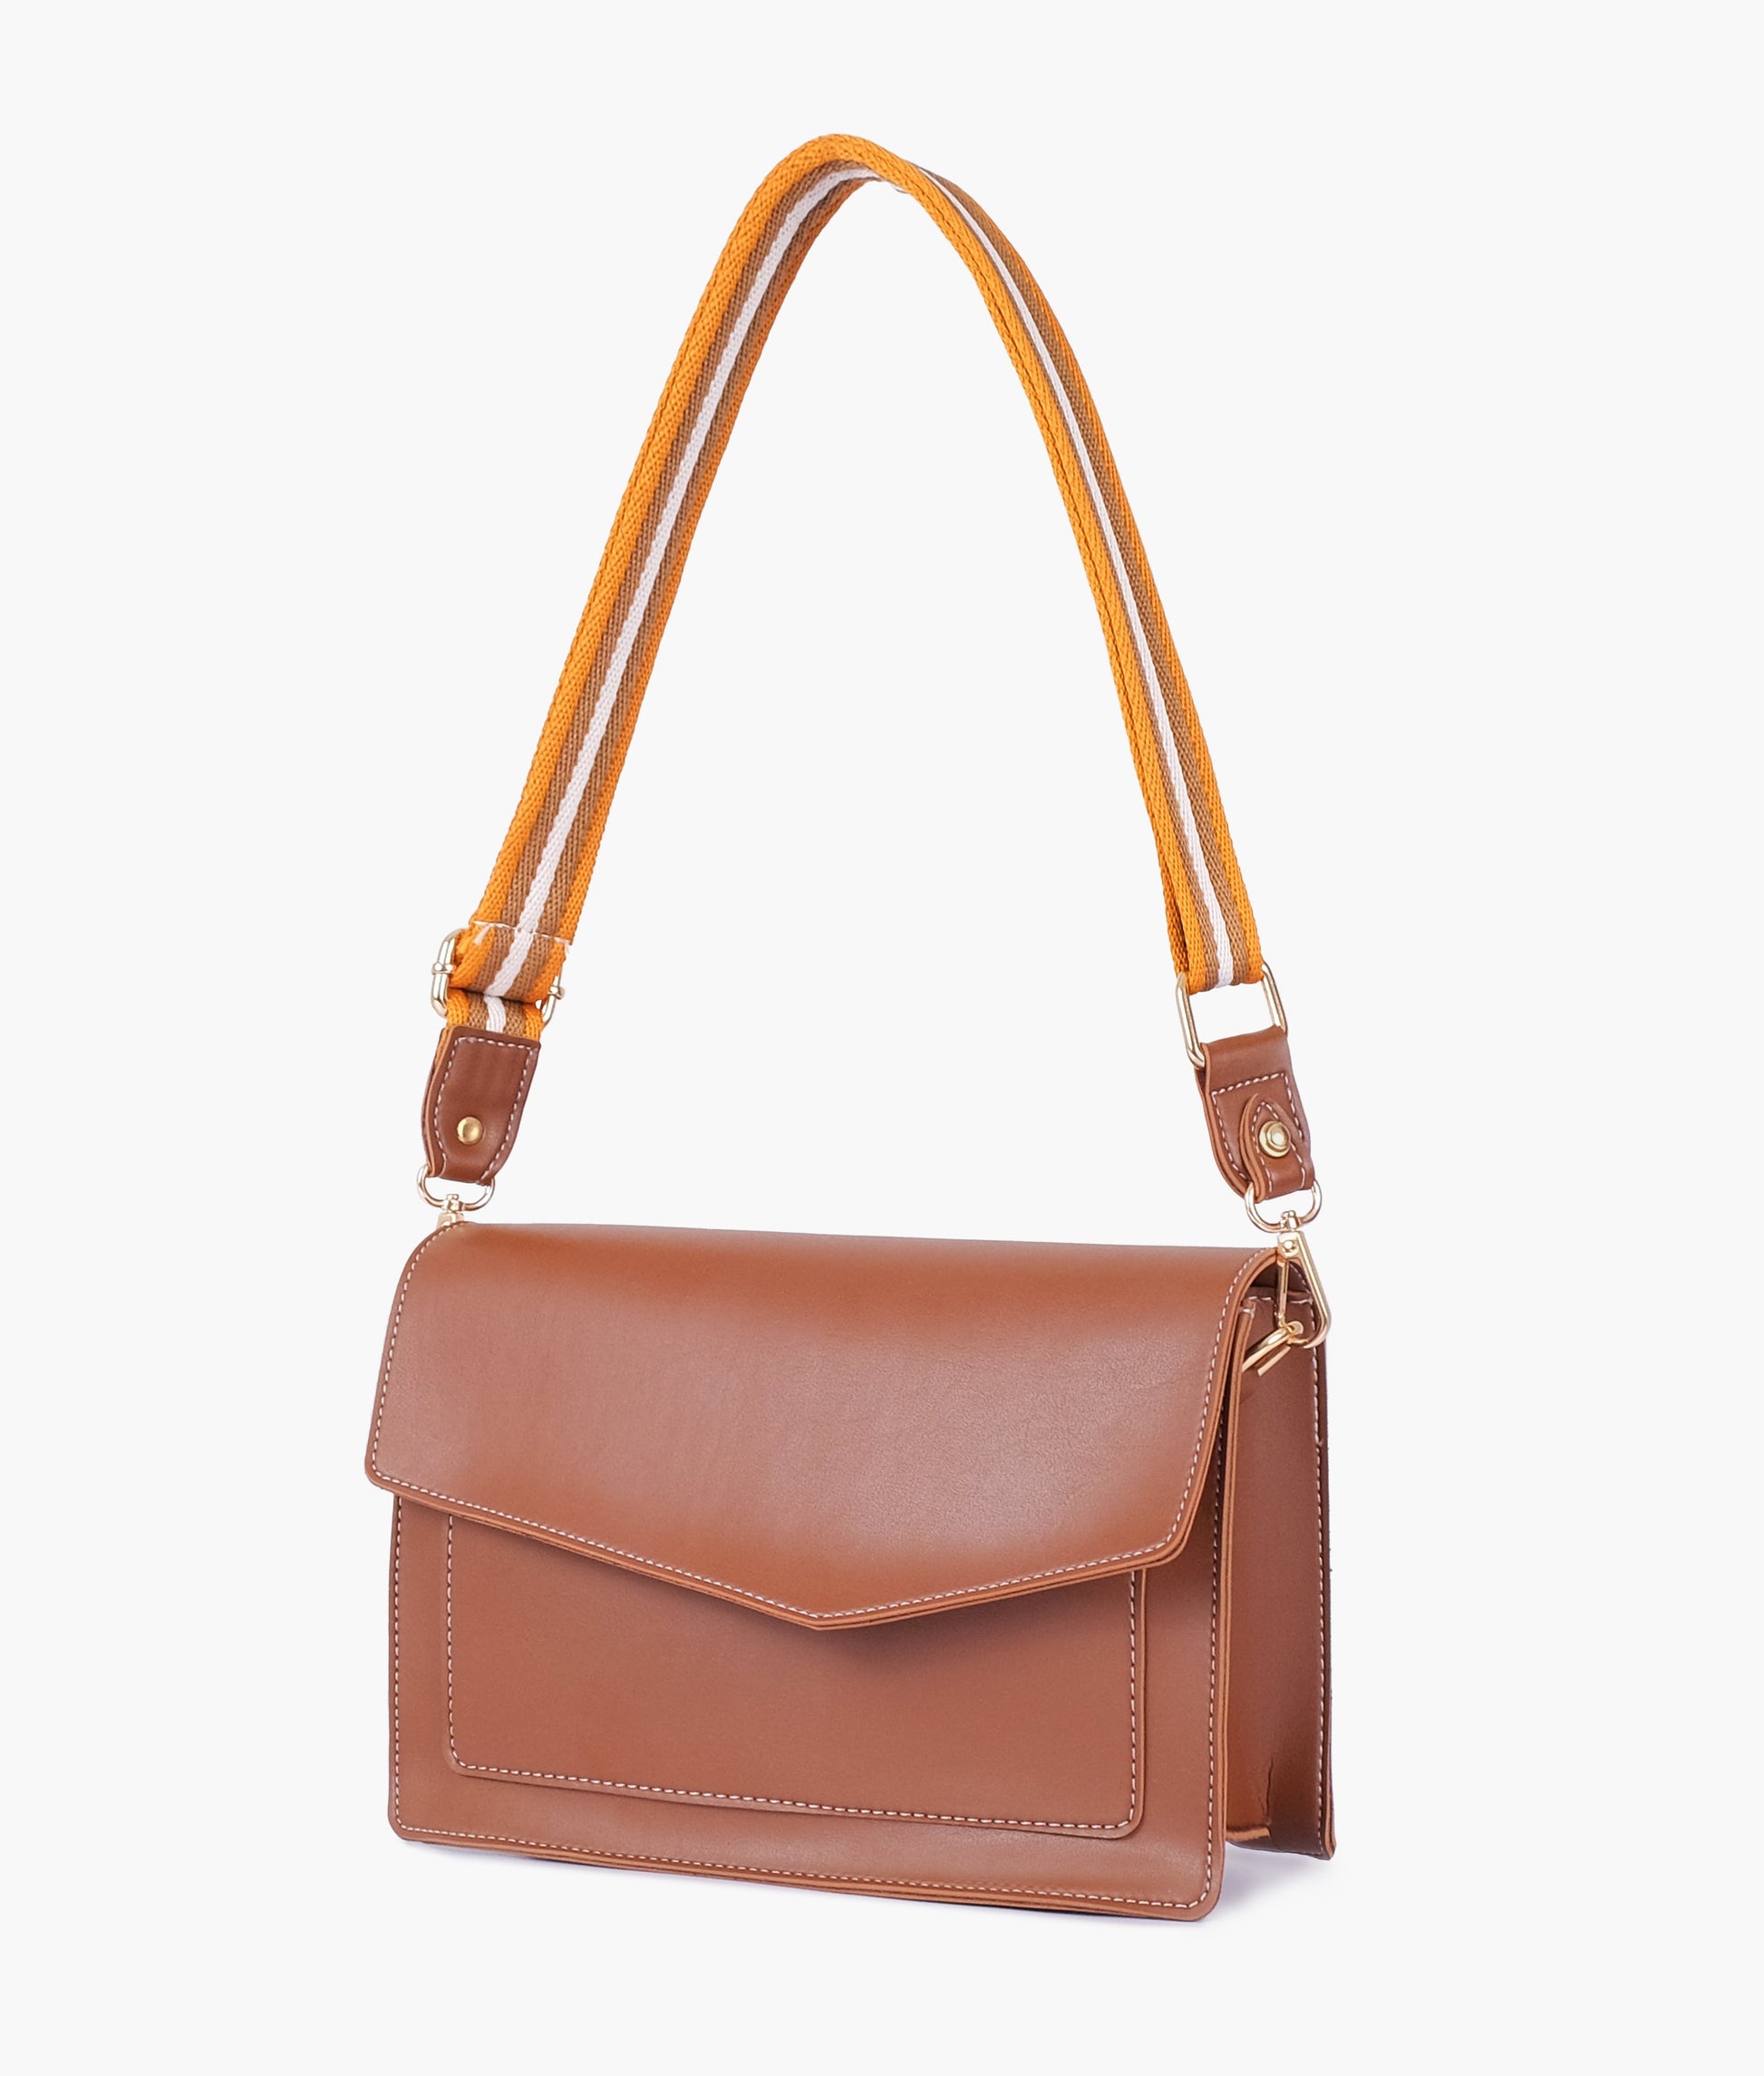 Buy Brown Half Flap Cross Body Bag - Sienna in Pakistan